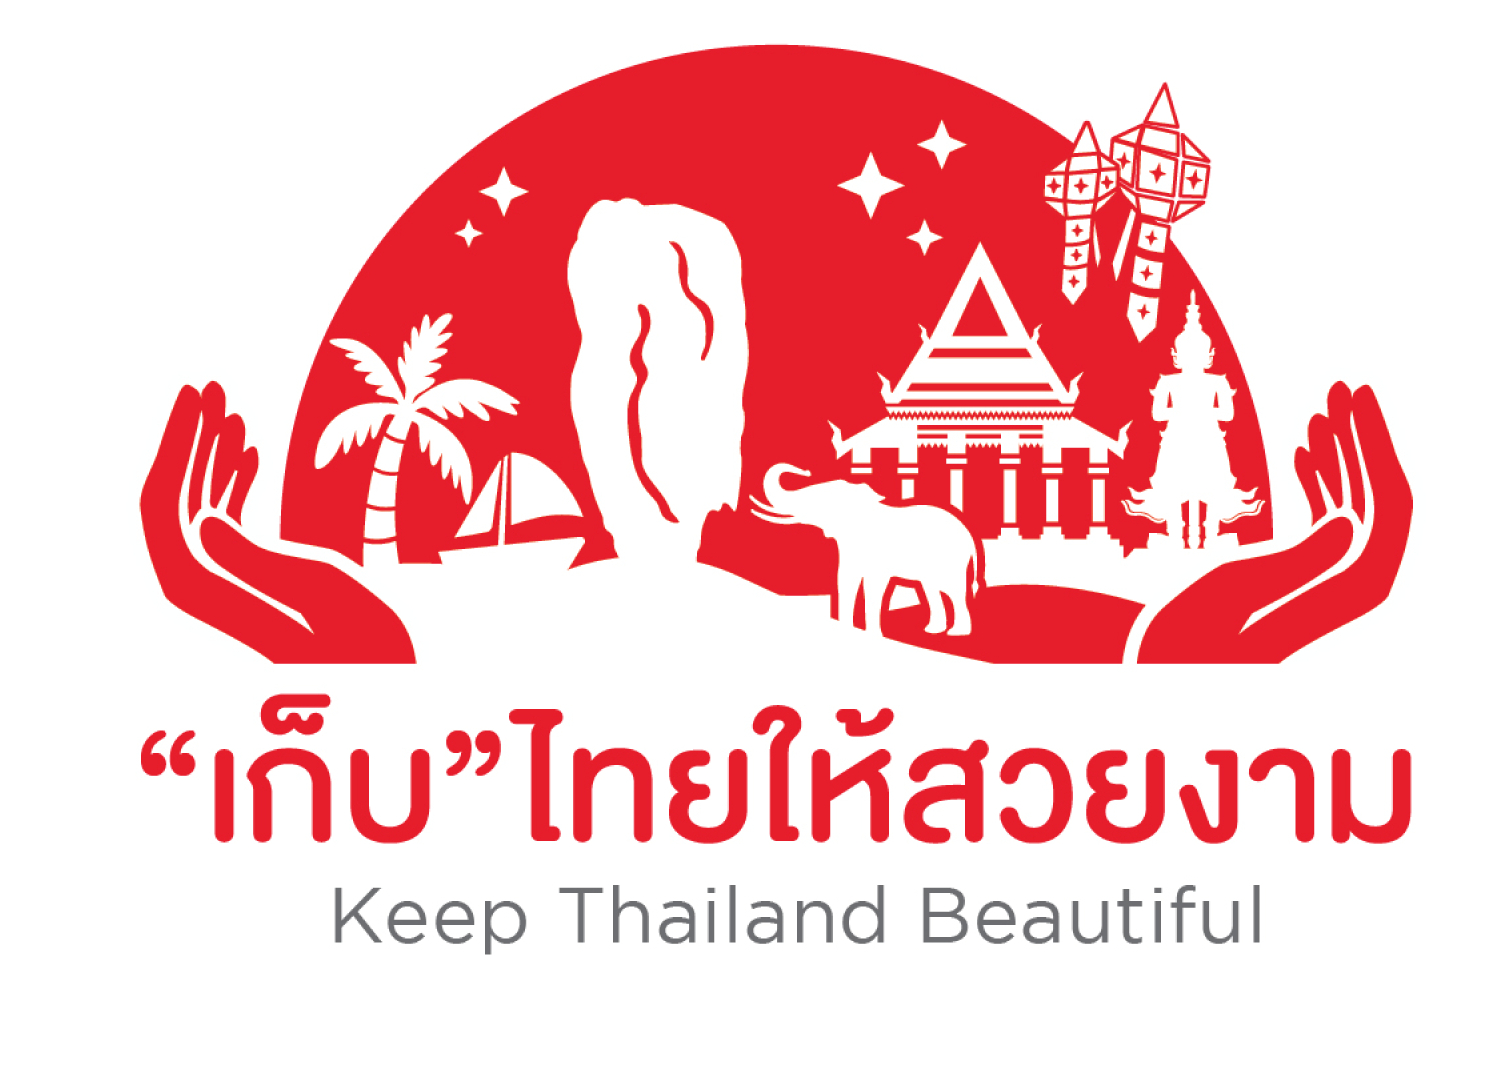 ตราสัญลักษณ์ “Keep Thailand Beautiful”